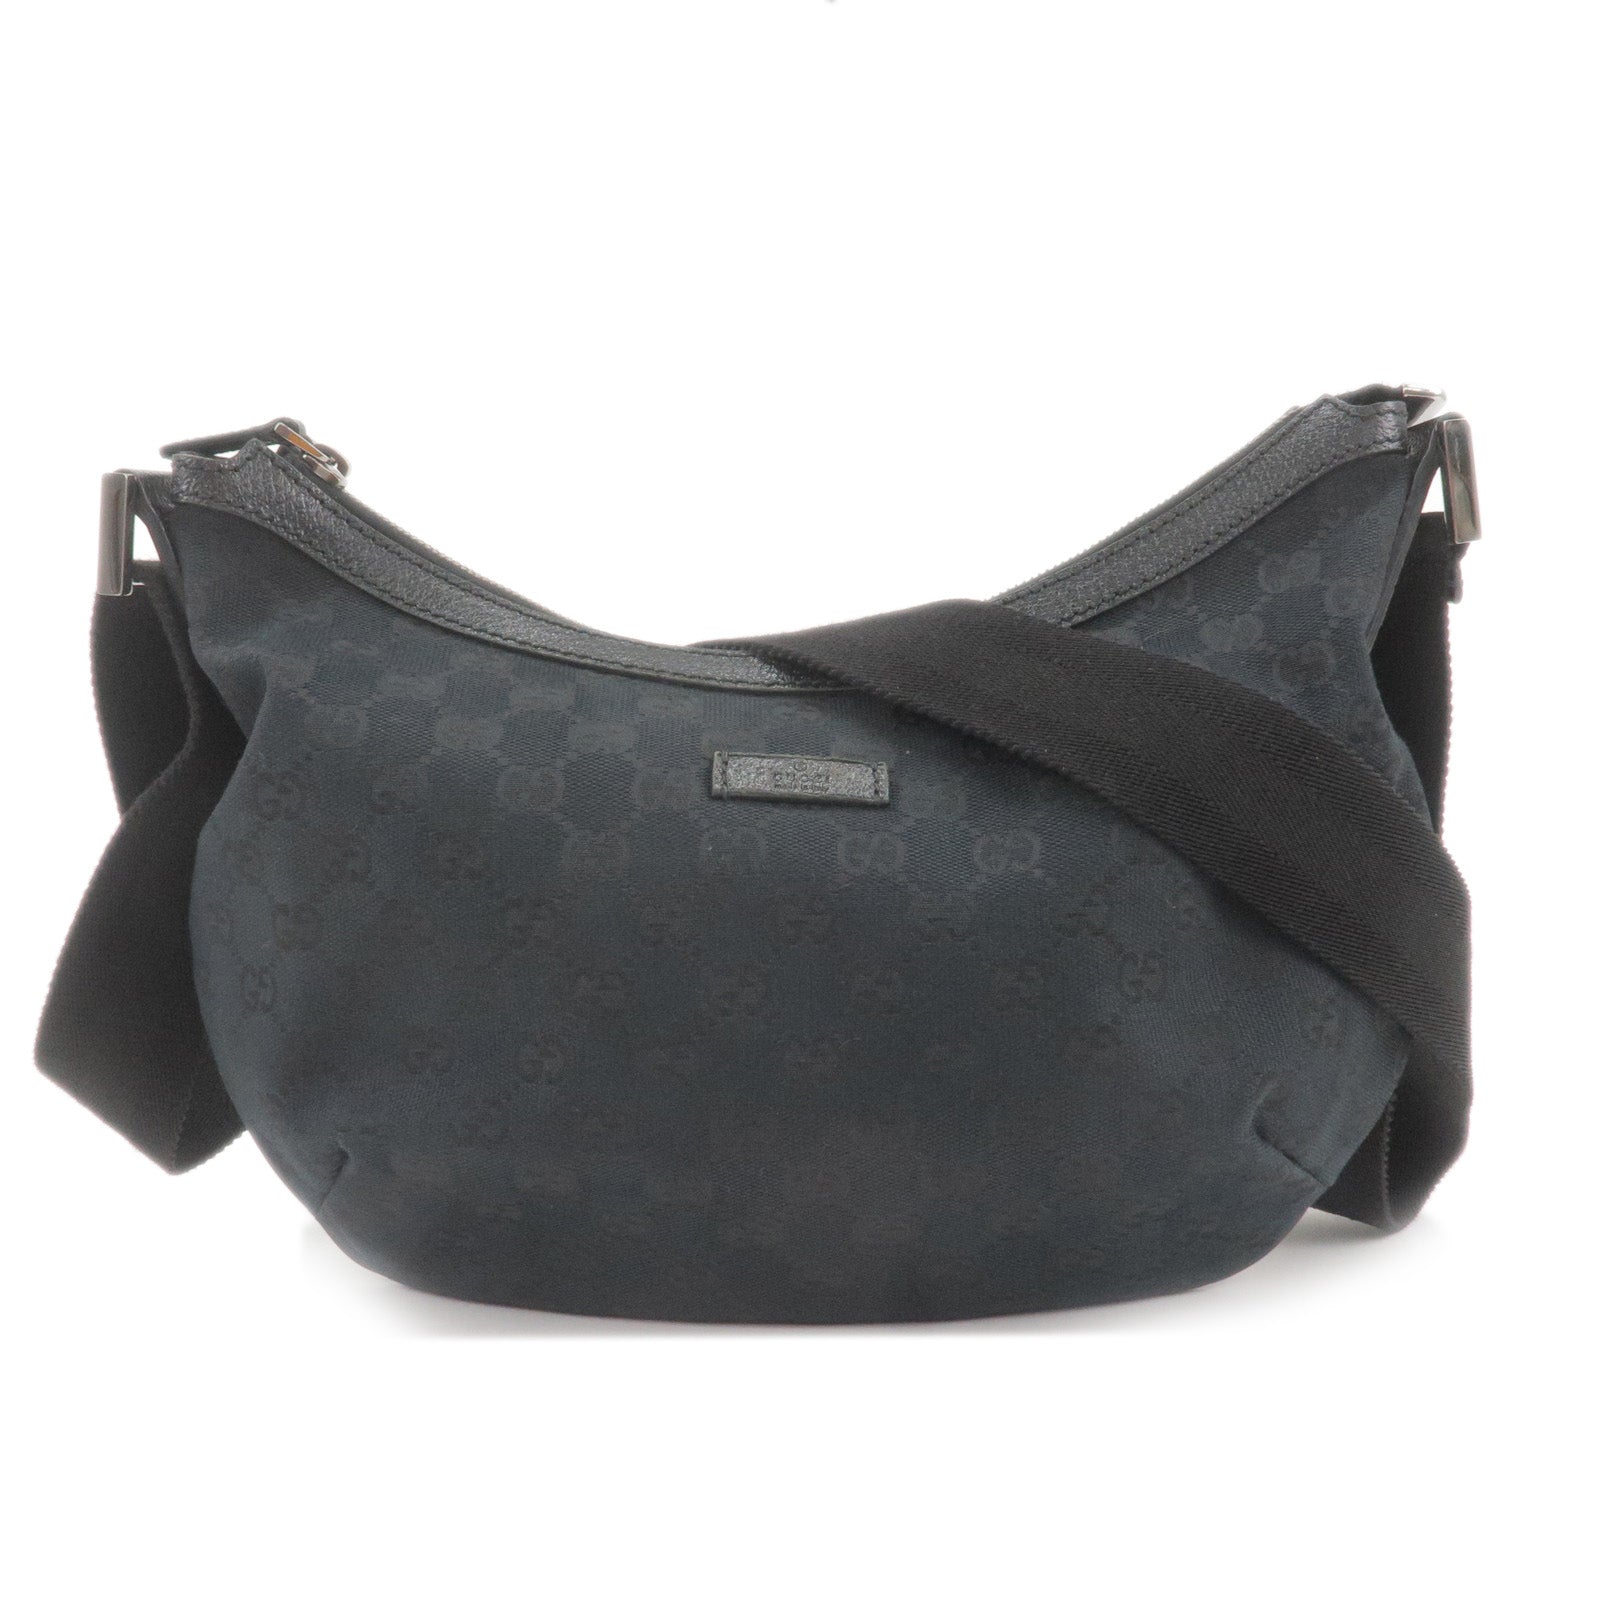 GUCCI-GG-Canvas-Leather-Shoulder-Bag-Hand-Bag-Black-181092